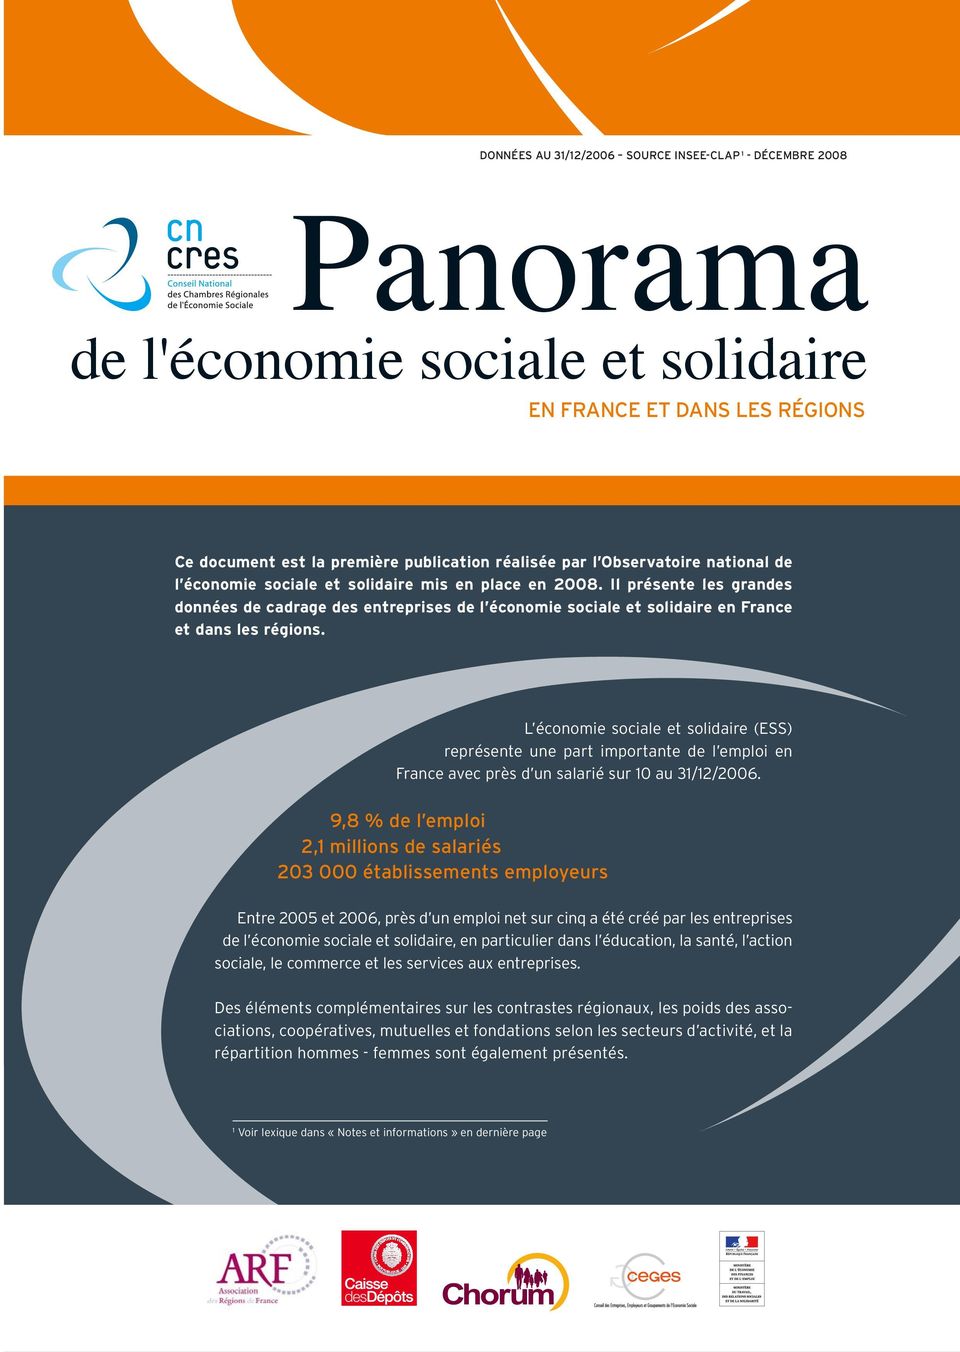 L économie sociale (ESS) représente une part importante de l emploi en France avec près d un salarié sur 10 au 31/12/2006.